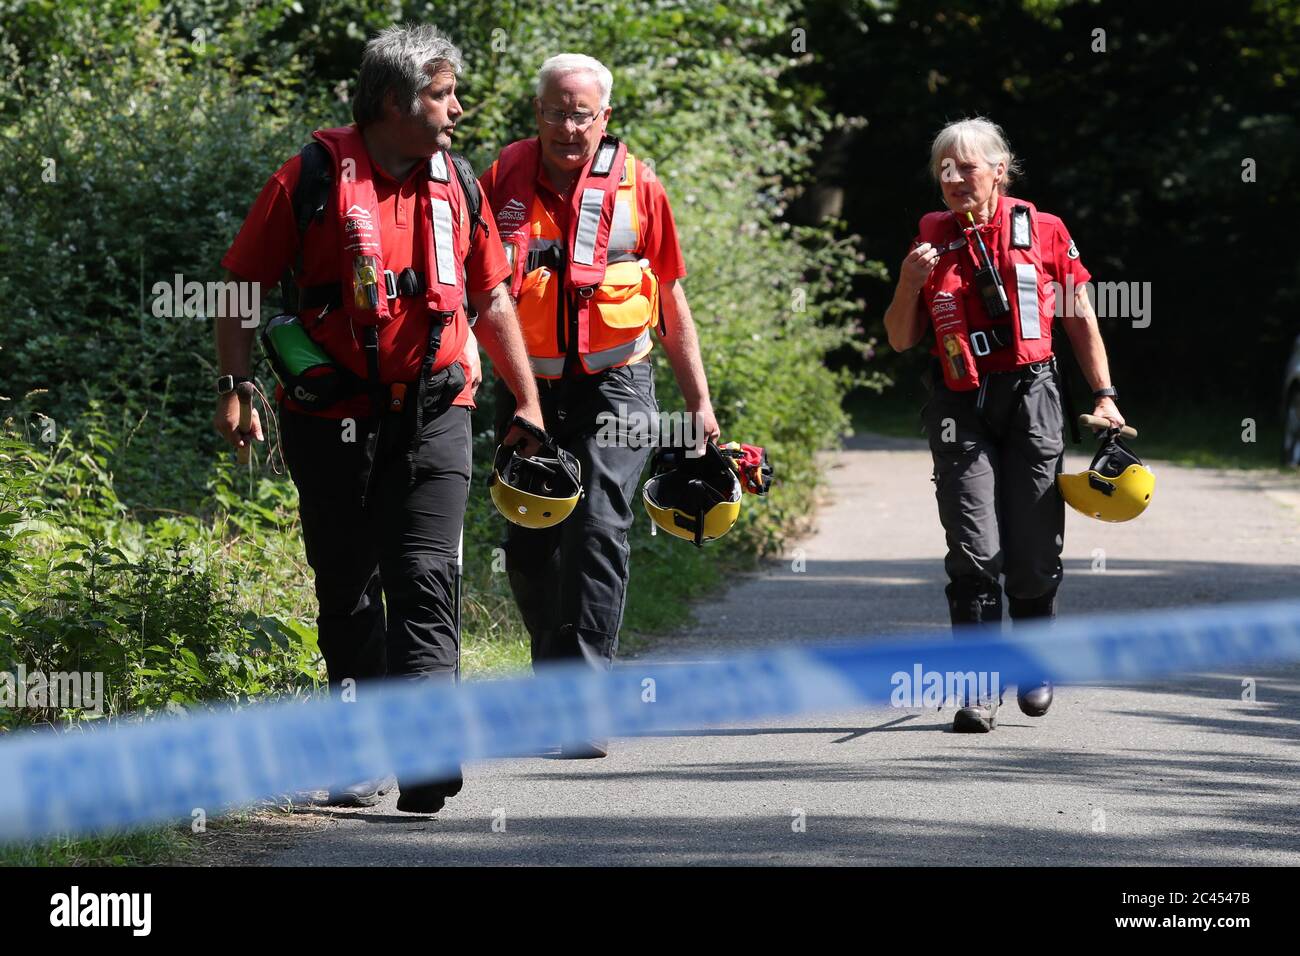 Les membres d'une équipe de recherche et de sauvetage font la route de l'héritier à Odney Weir près de Cookham dans le Berkshire, au milieu de rapports un homme est manquant après avoir été dans l'eau. Banque D'Images